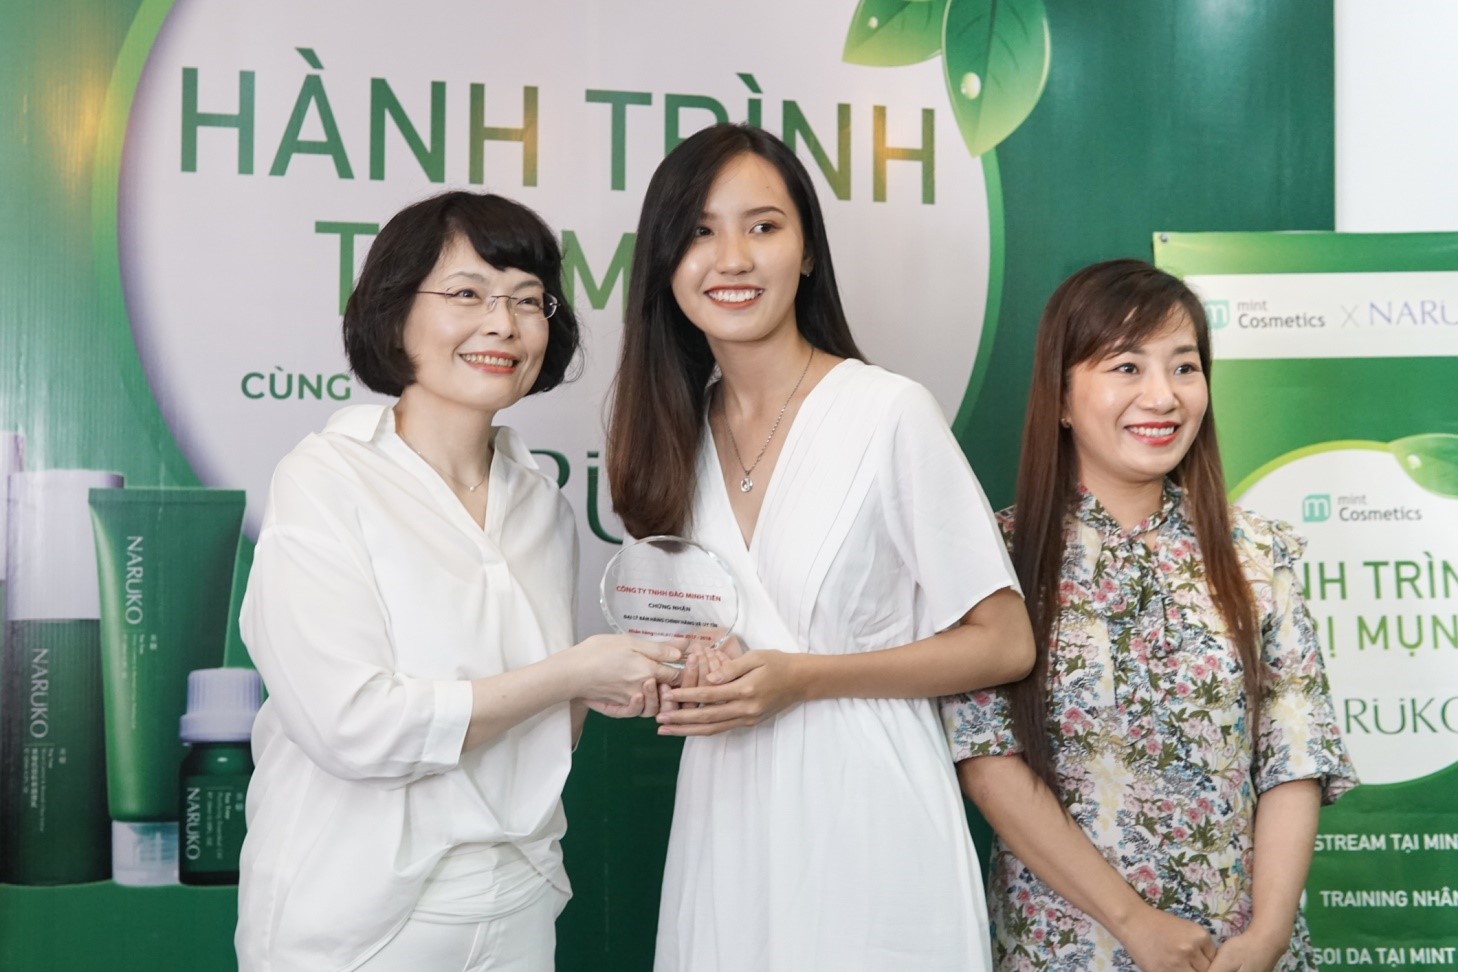 Chứng nhận Mint là đại lý uy tín phân phối các sản phẩm Naruko Việt Nam